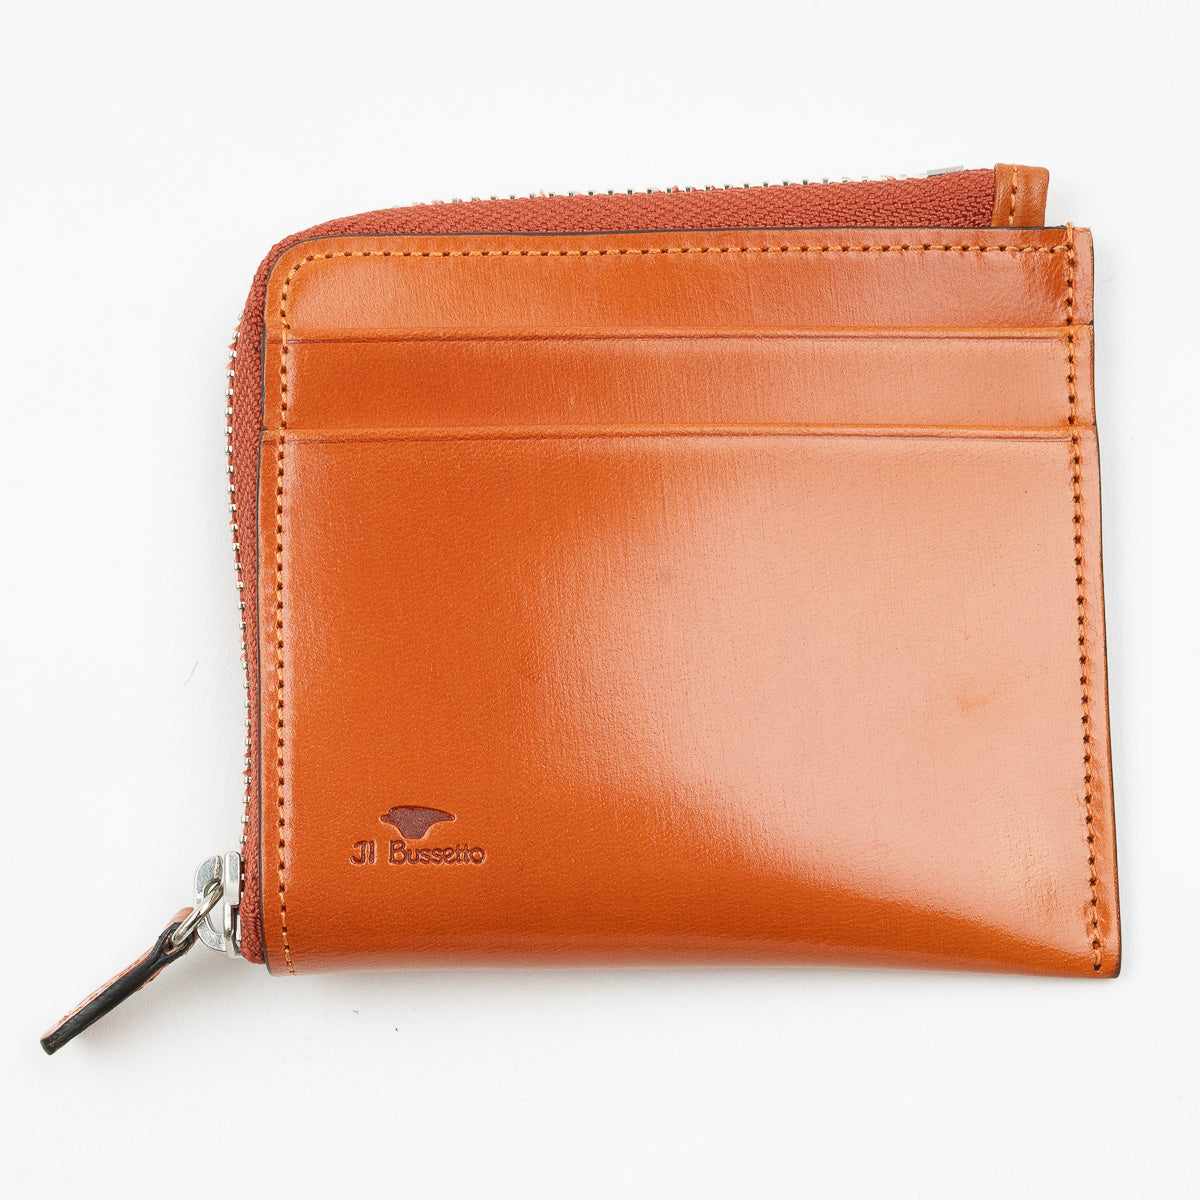 Zipped Wallet - Orange